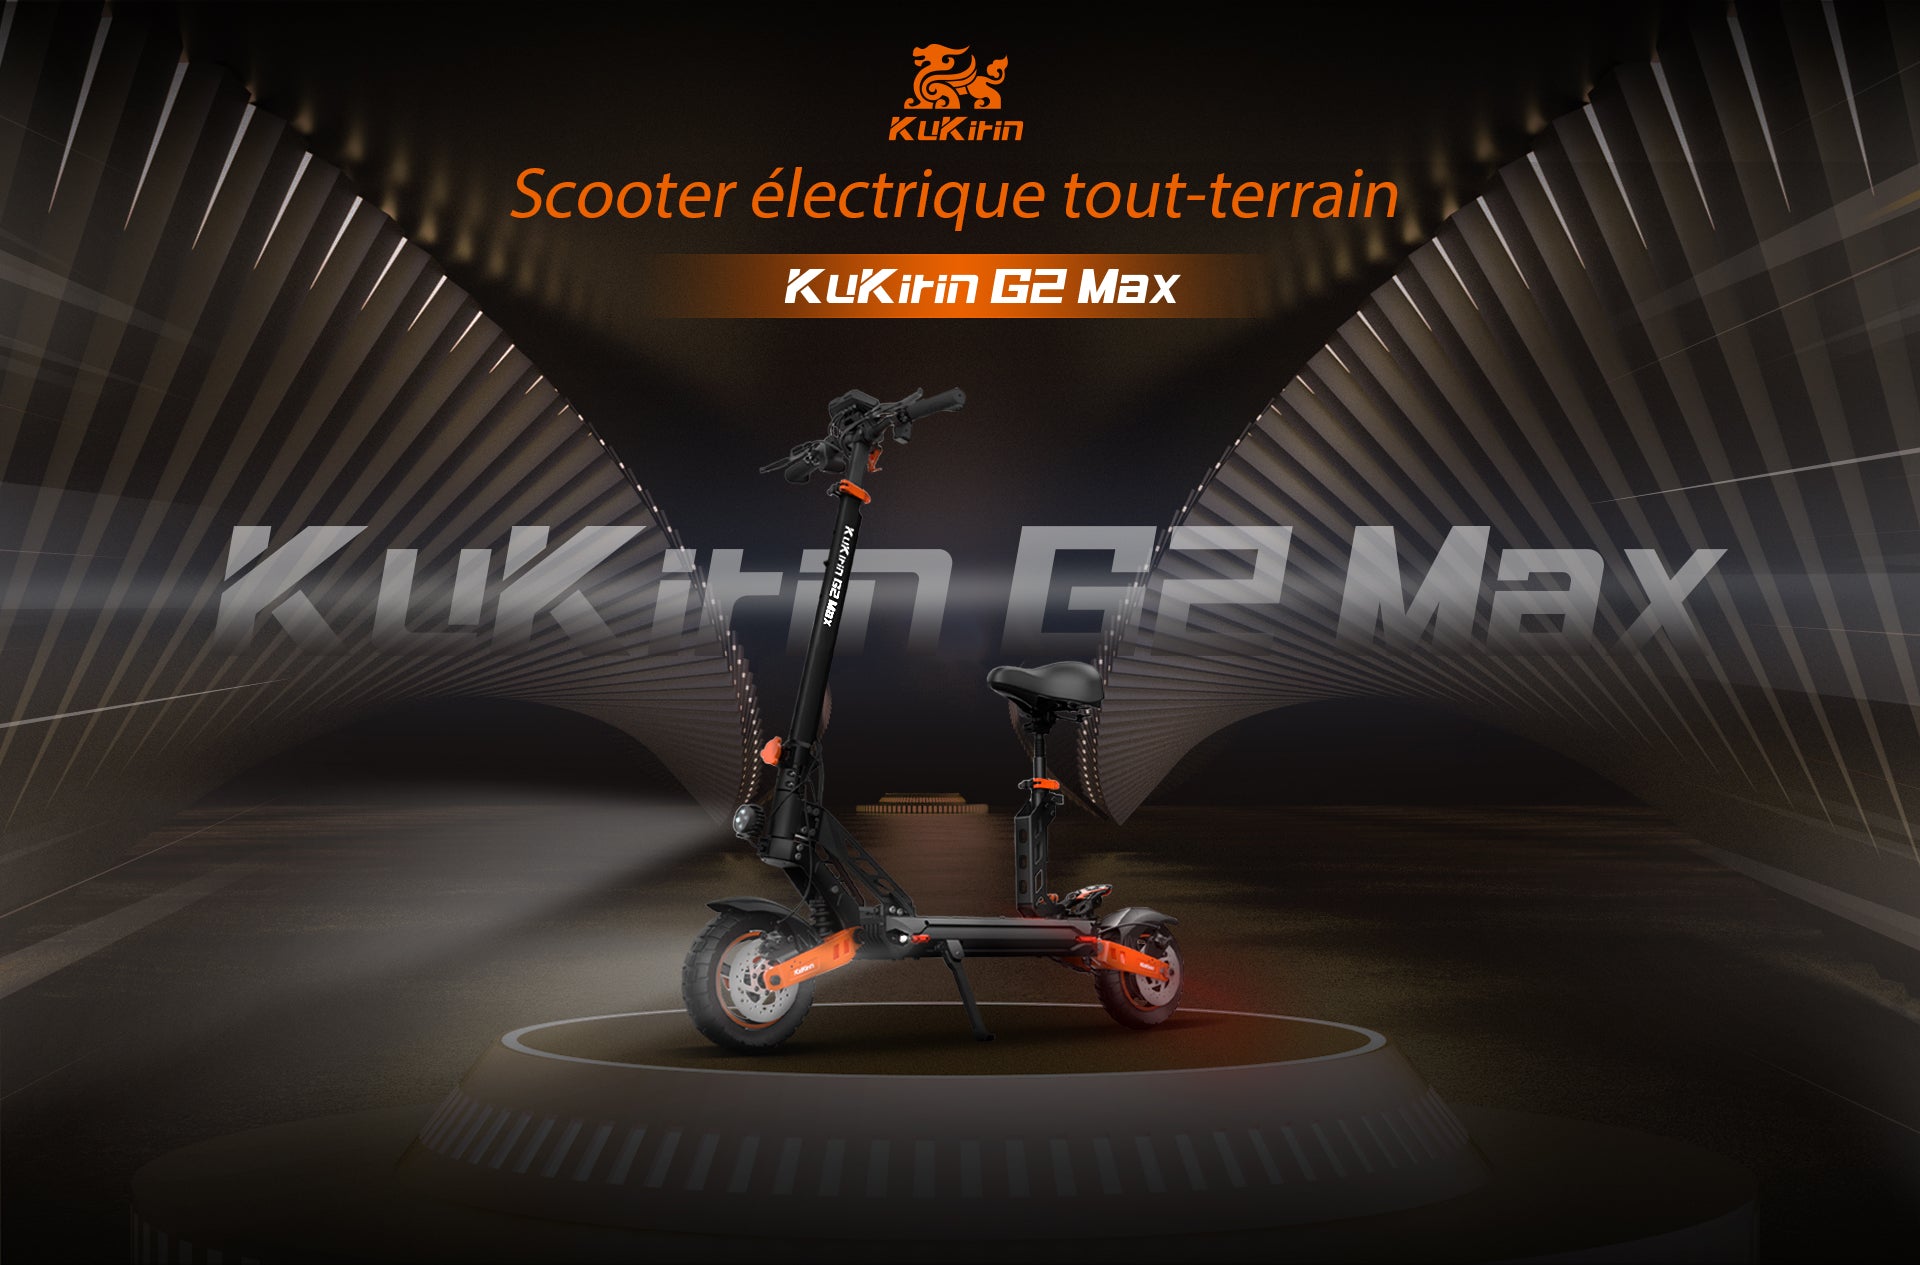 La trottinette électrique rapide et puissante Kukirin G2 Max 1000W